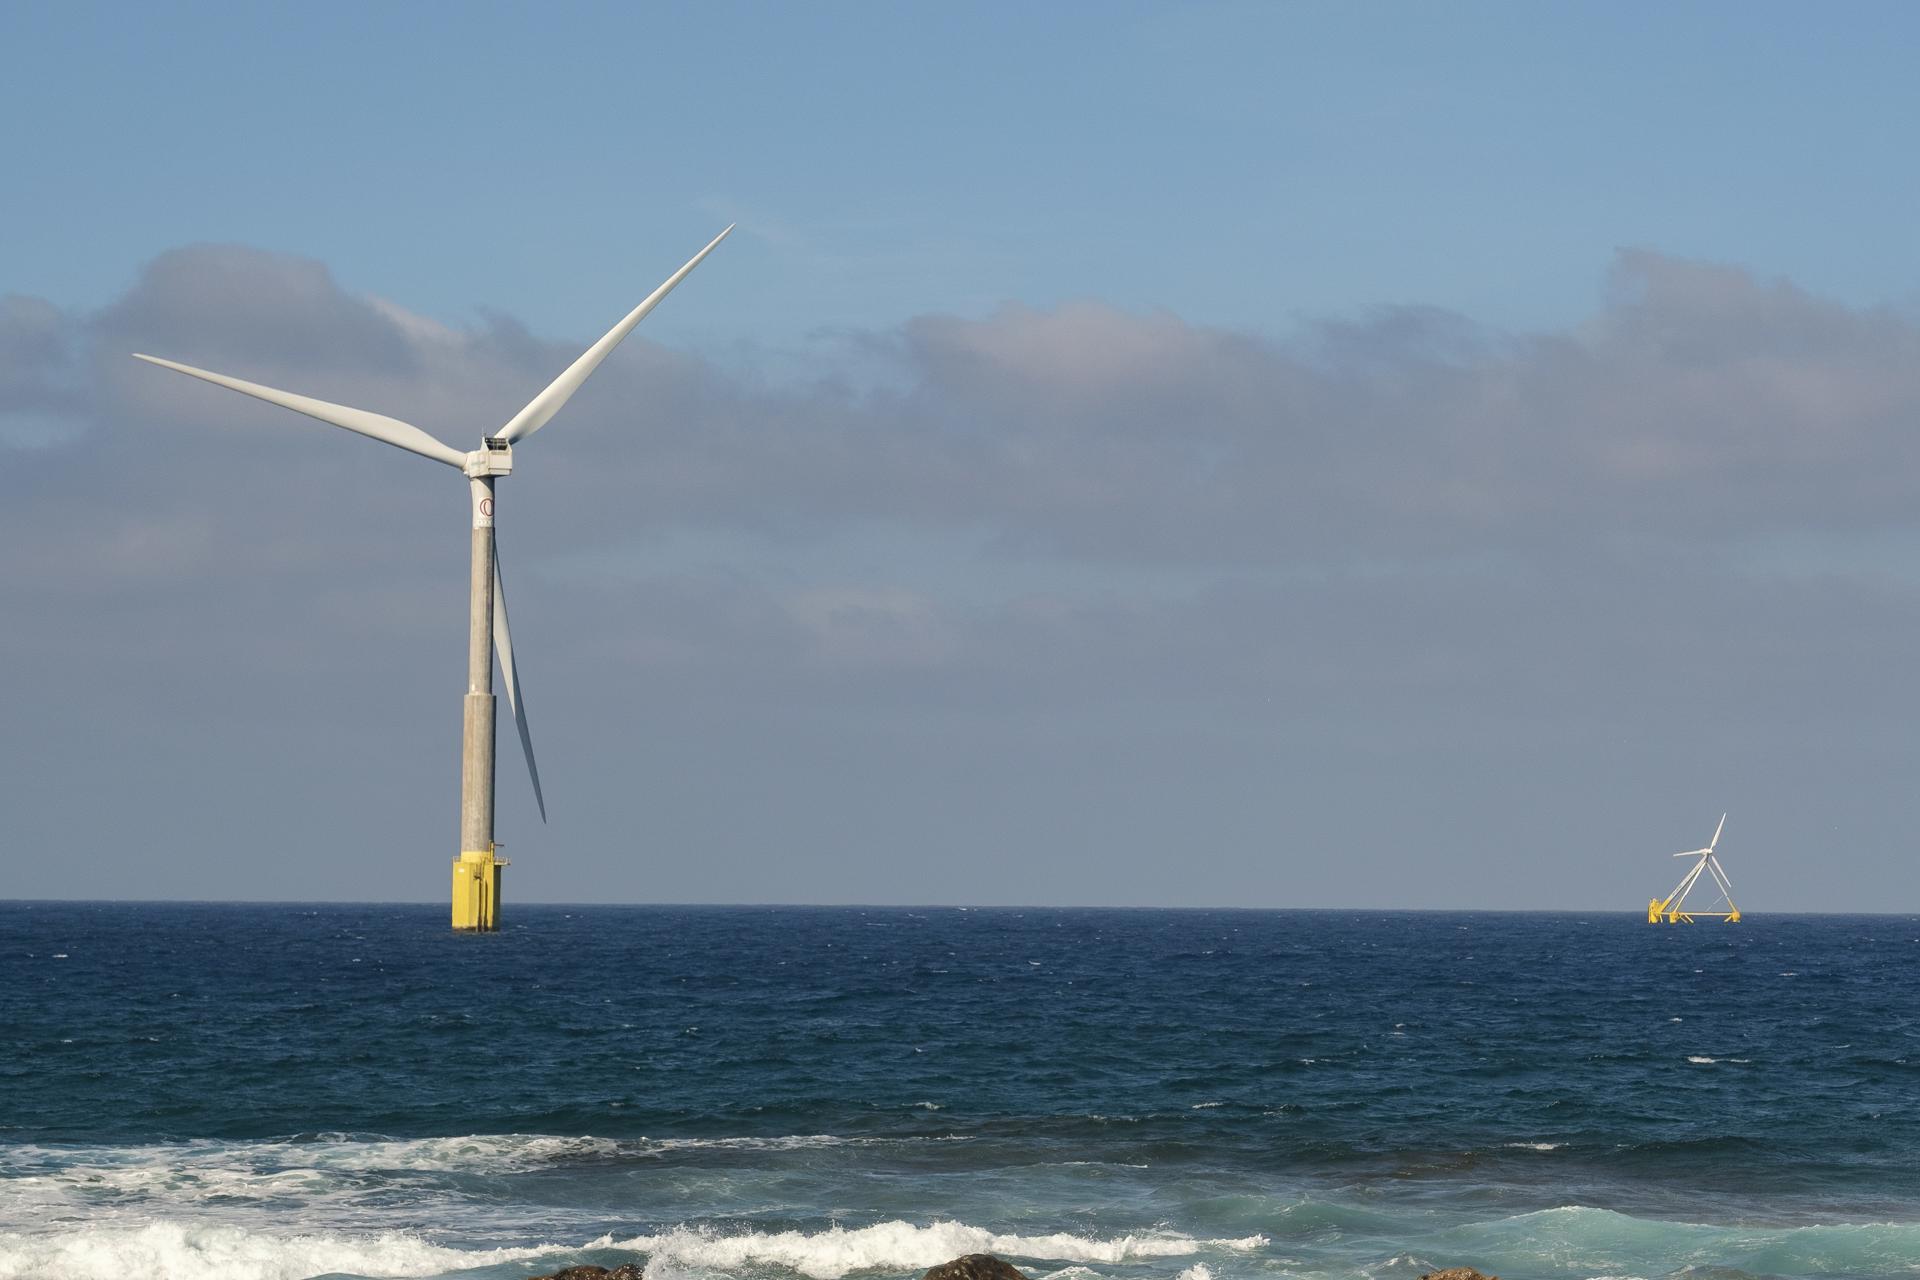 Foto de archivo de dos prototipos de energía eólica marina sometidos a ensayos frente a la costa de Gran Canaria. EFE/Ángel Medina G.